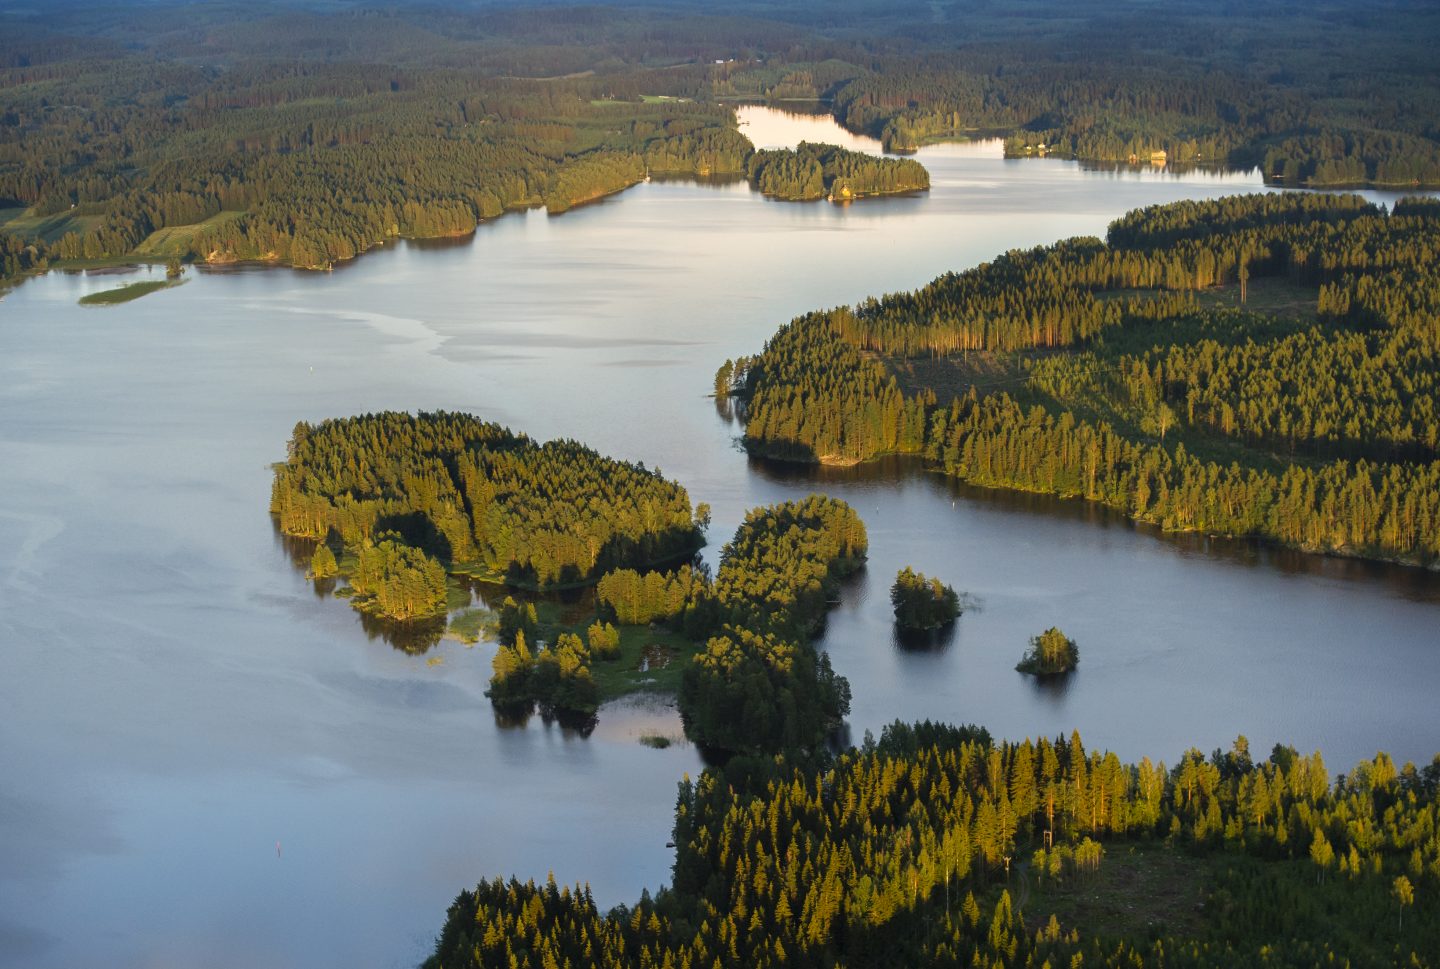 Savolaista järvimaisemaa ylhäältä kuvattuna. Kuva: Juha Määttä/Vastavalo